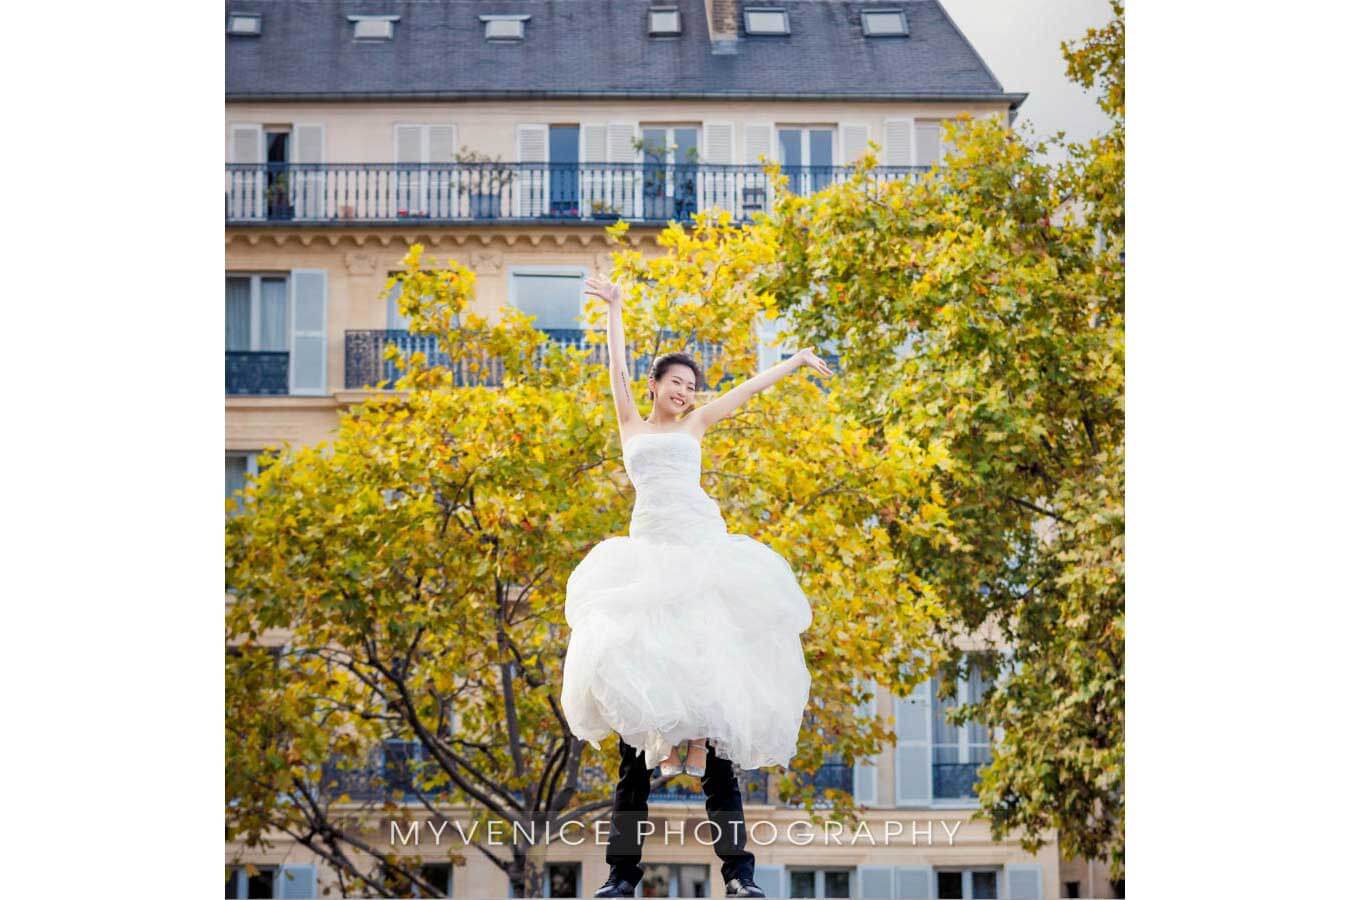 巴黎旅拍, 欧洲旅拍, 欧洲婚纱照, 法国旅拍, 巴黎婚纱照, 欧洲婚纱摄影, Pre-wedding Photo Paris